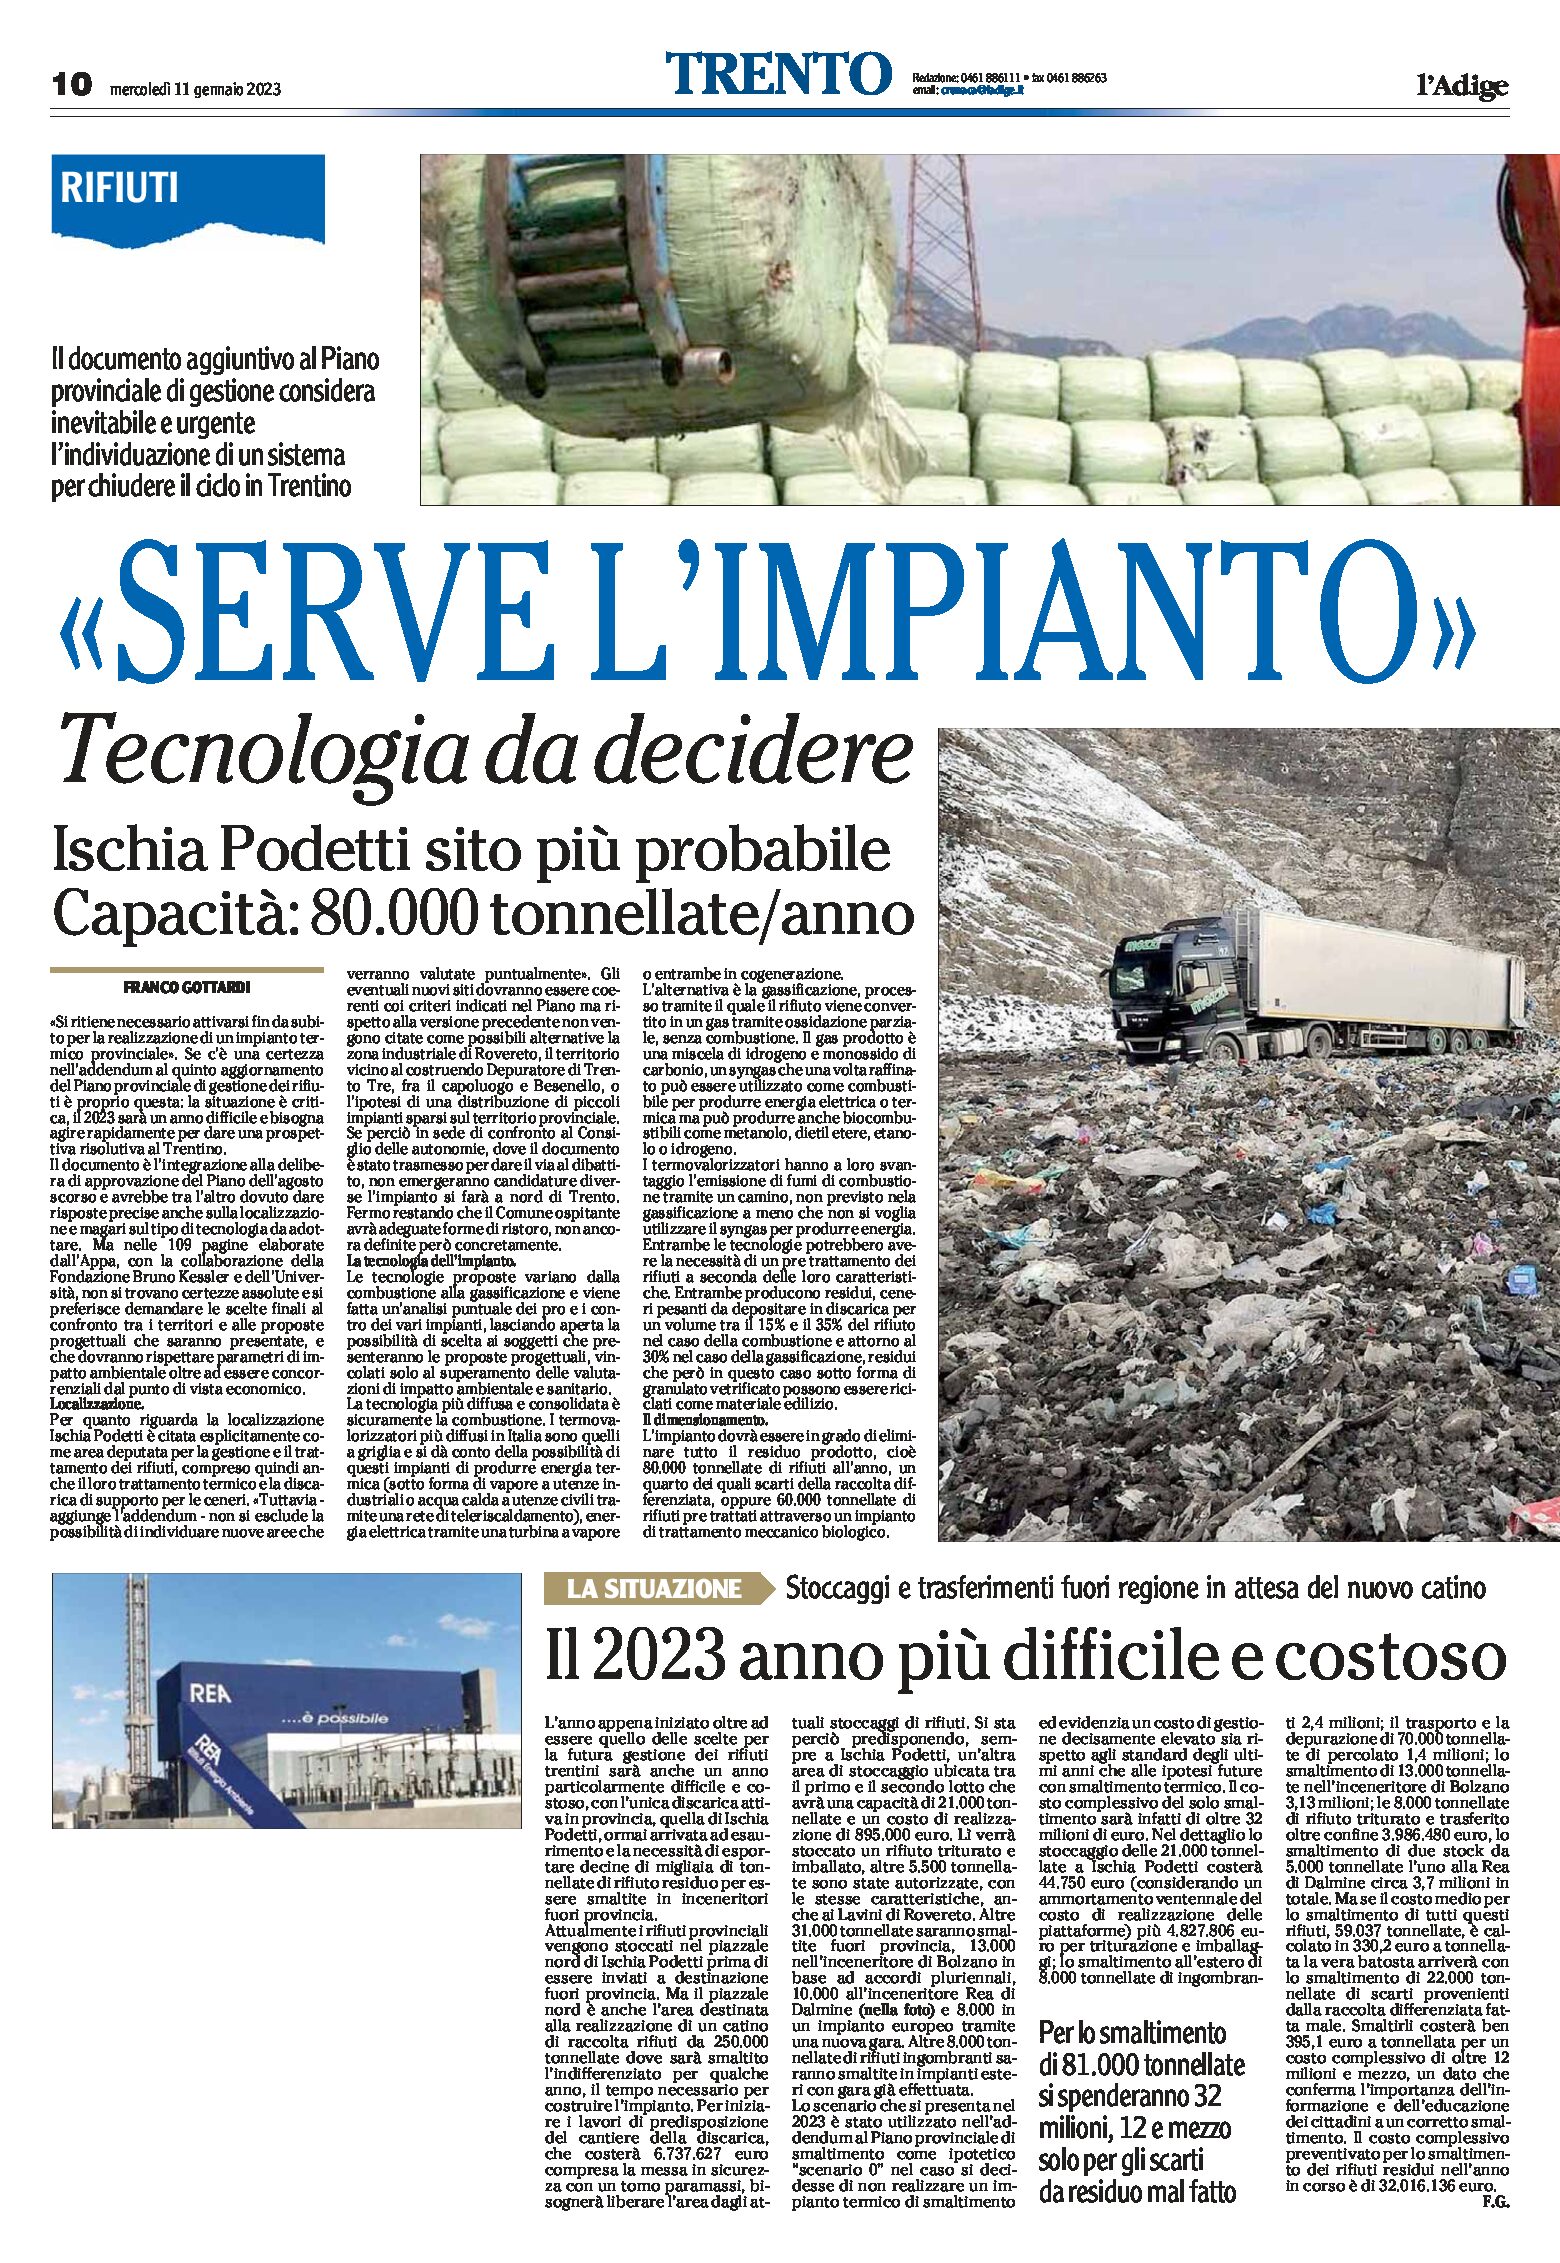 Trentino, rifiuti: “serve l’impianto”. Tecnologia da decidere. Ischia-Podetti sito più probabile